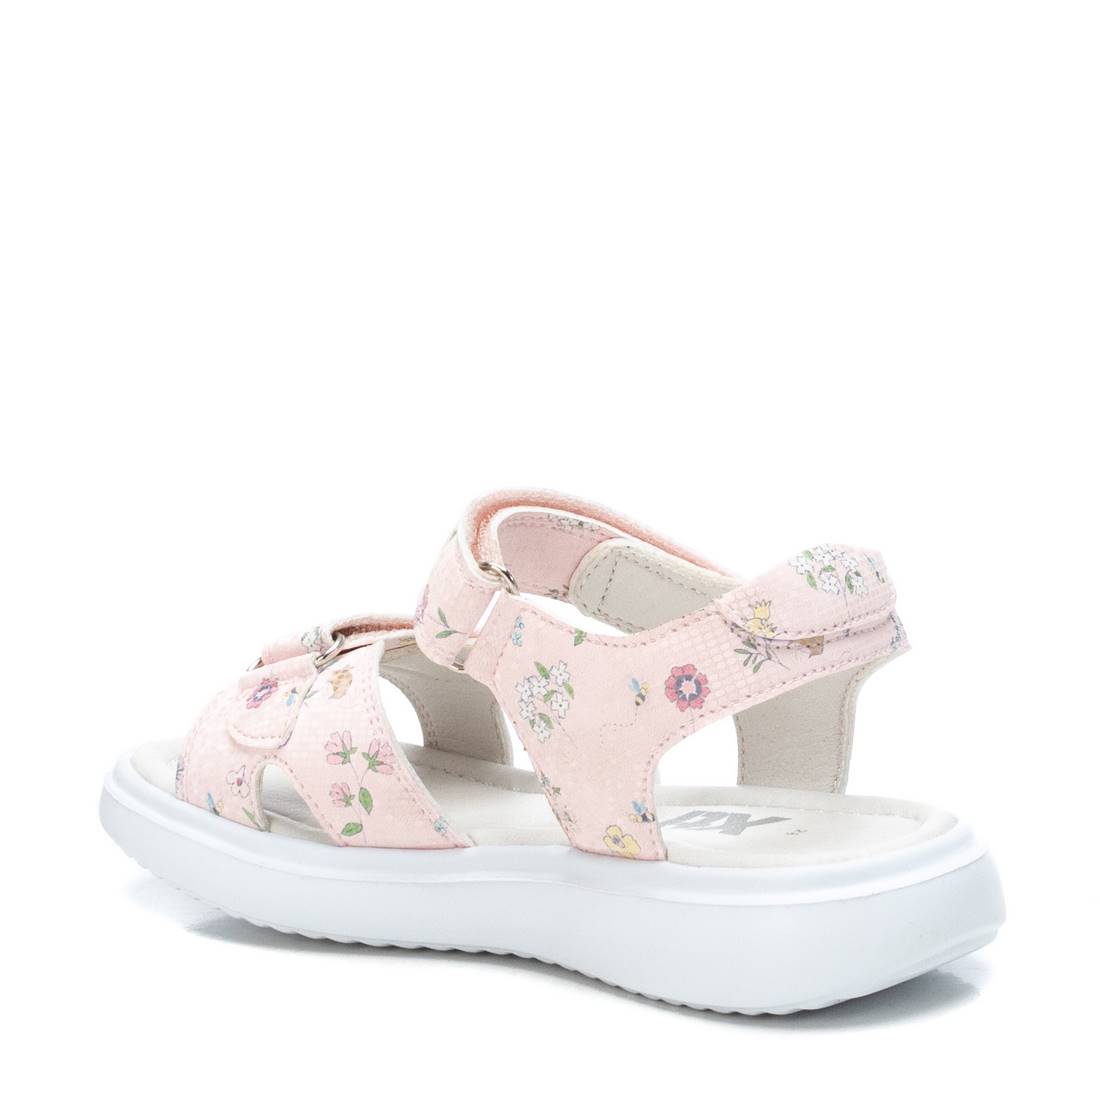 Giày Sandals Kids PU Floral Hồng S35